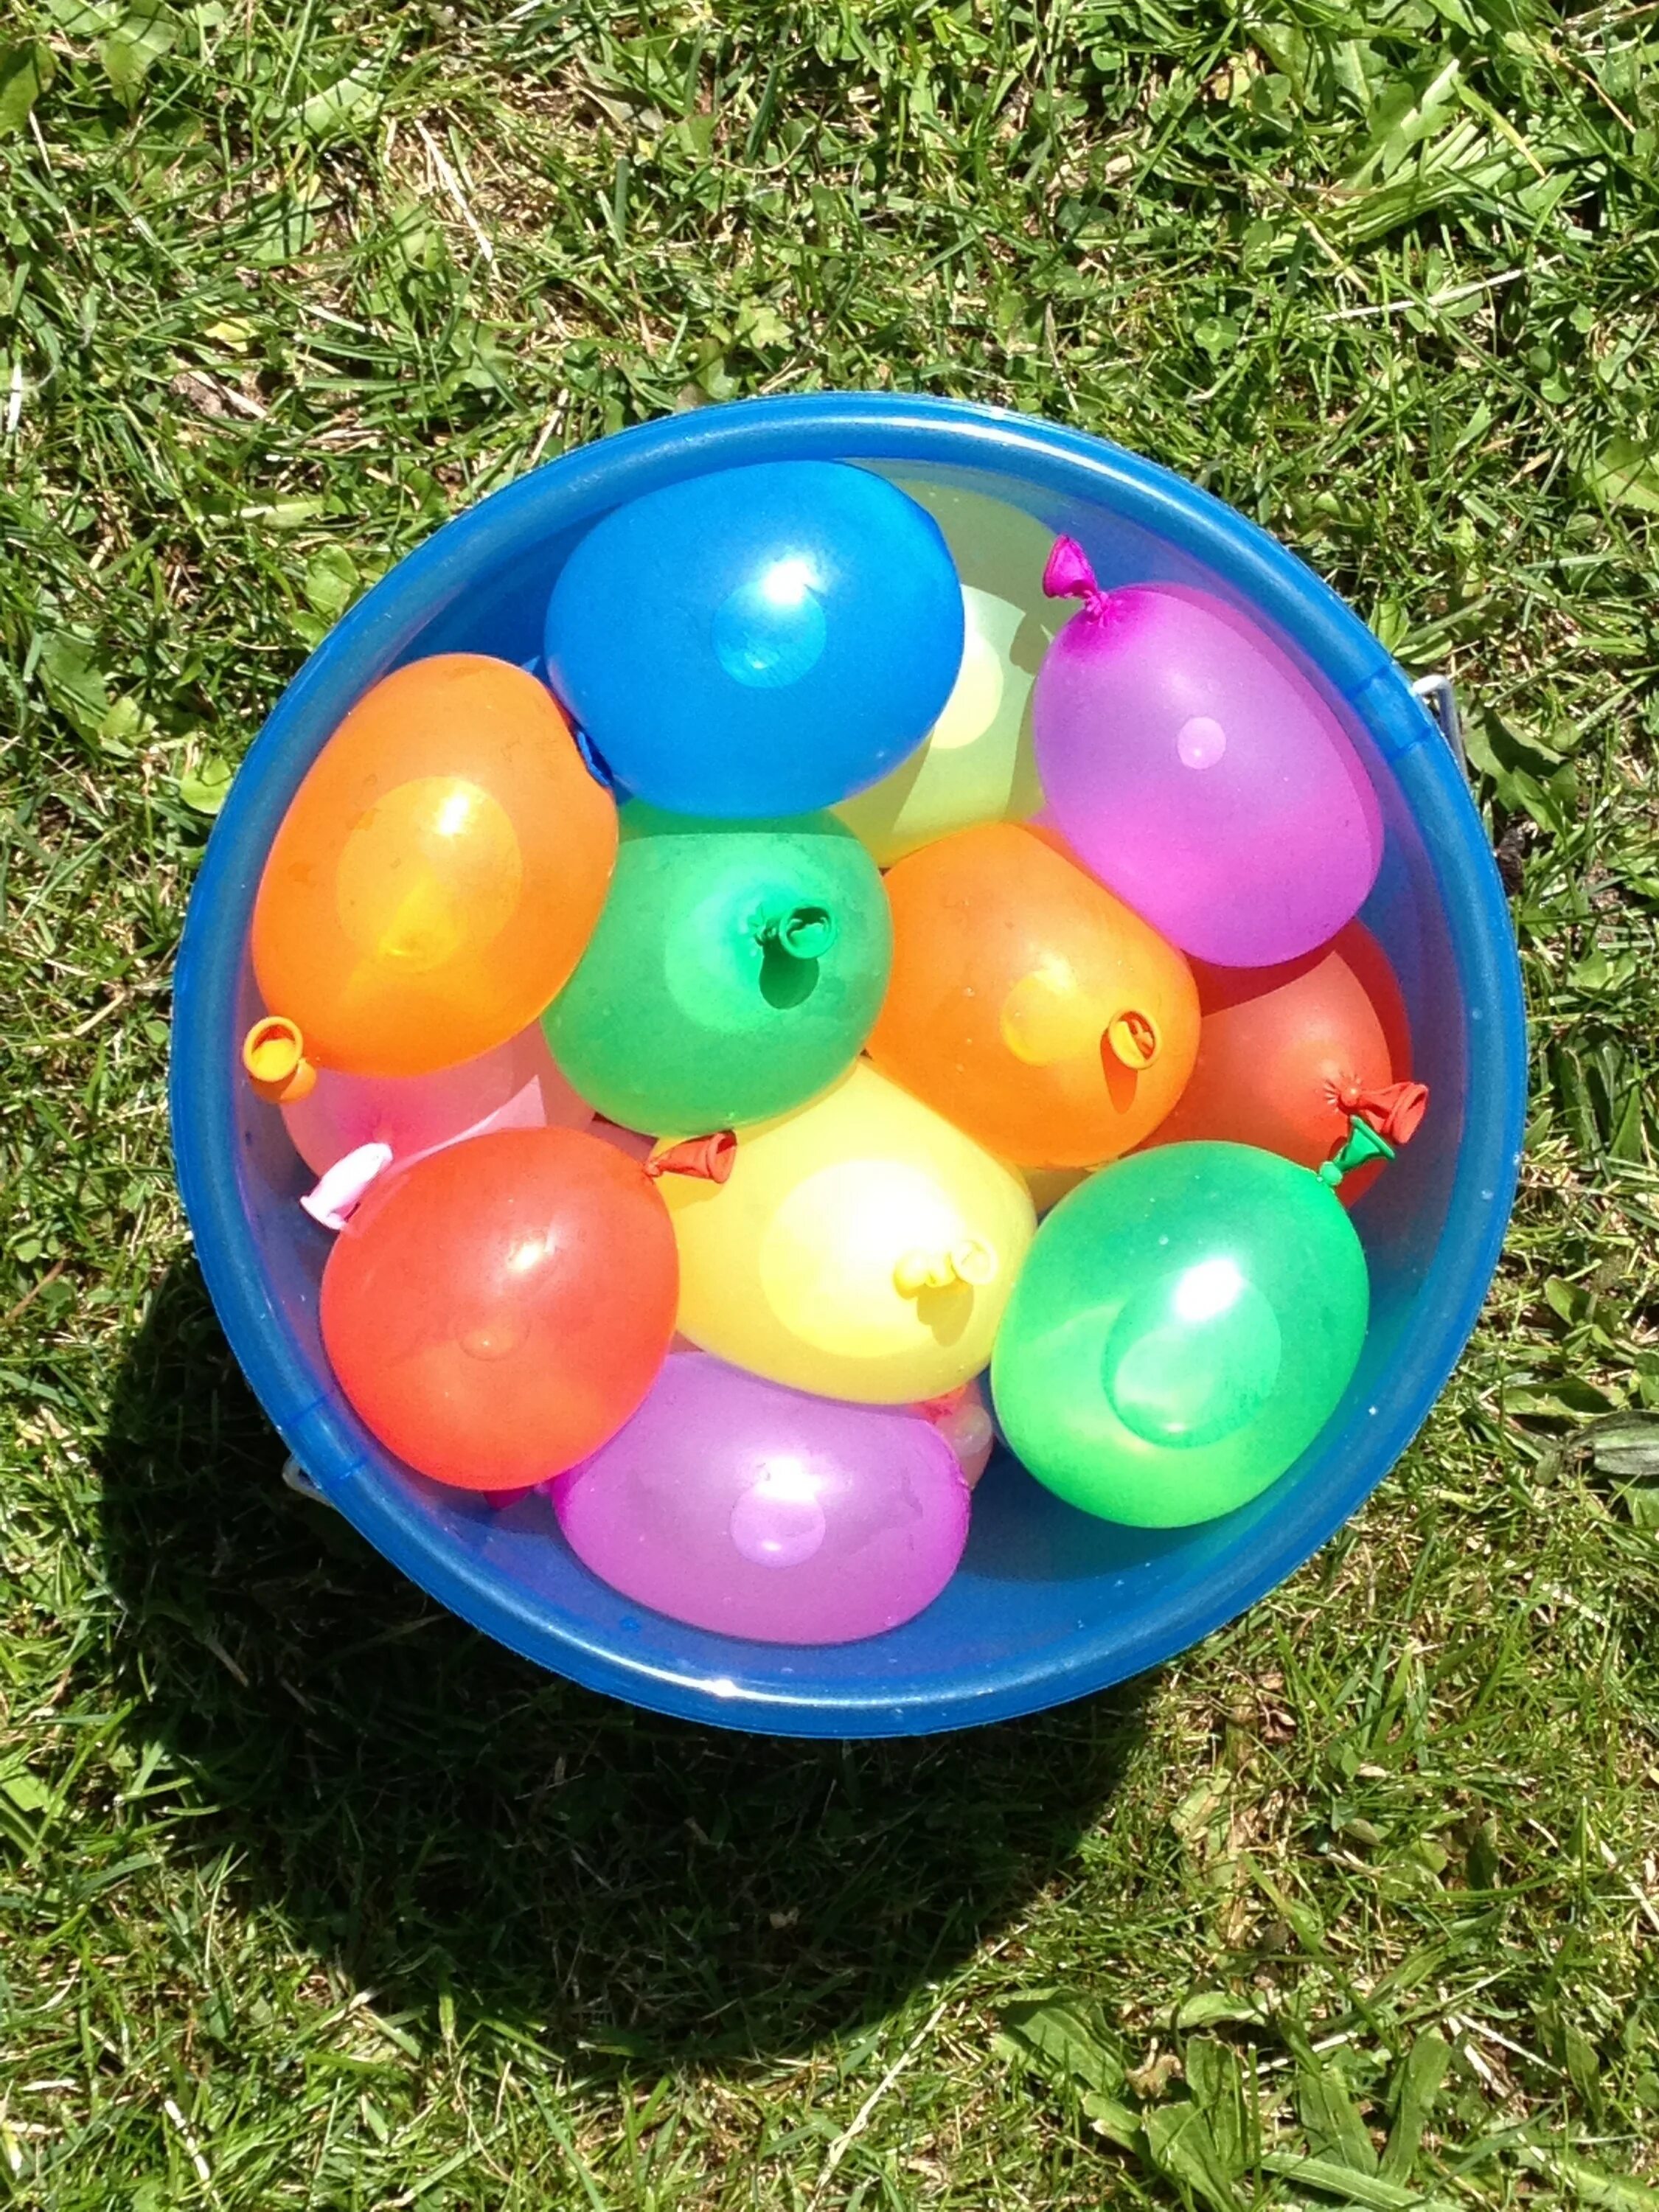 Лето в шаре. Шарики надувные. Шарик с водой. Игрушка в шарике воздушном. Игрушкая с воздушными шарами.